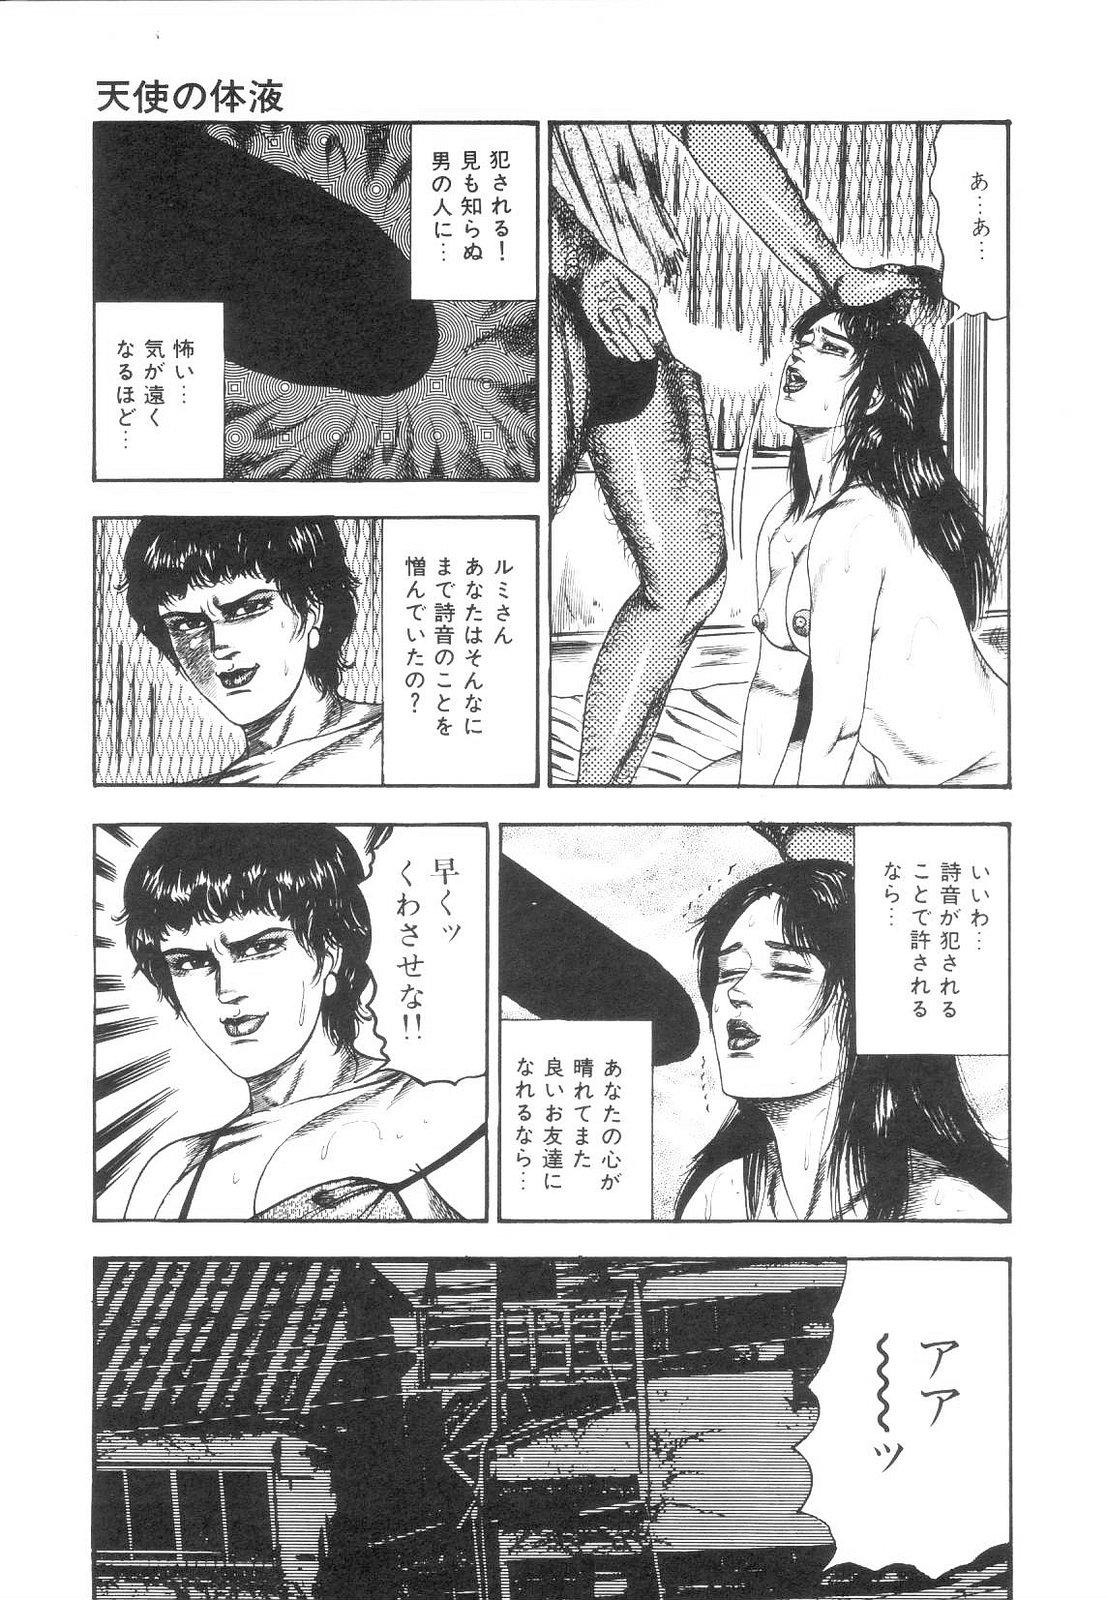 Shiro no Mokushiroku Vol. 1 - Sei Shojo Shion no Shou 103